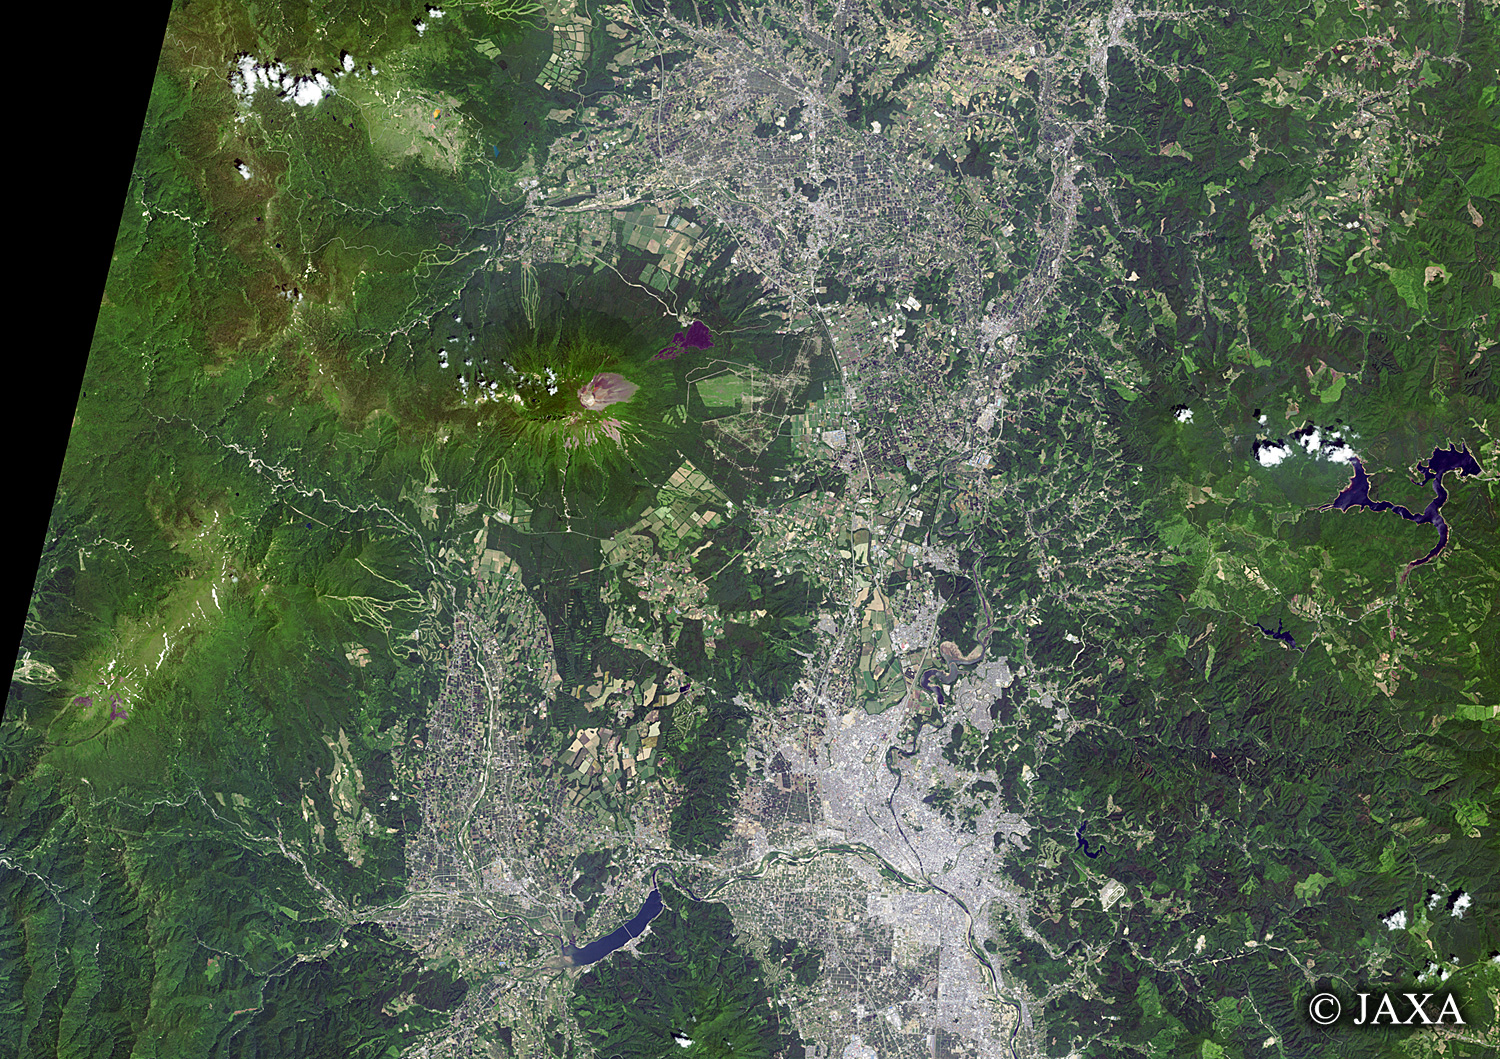 だいちから見た日本の都市 岩手山:衛星画像